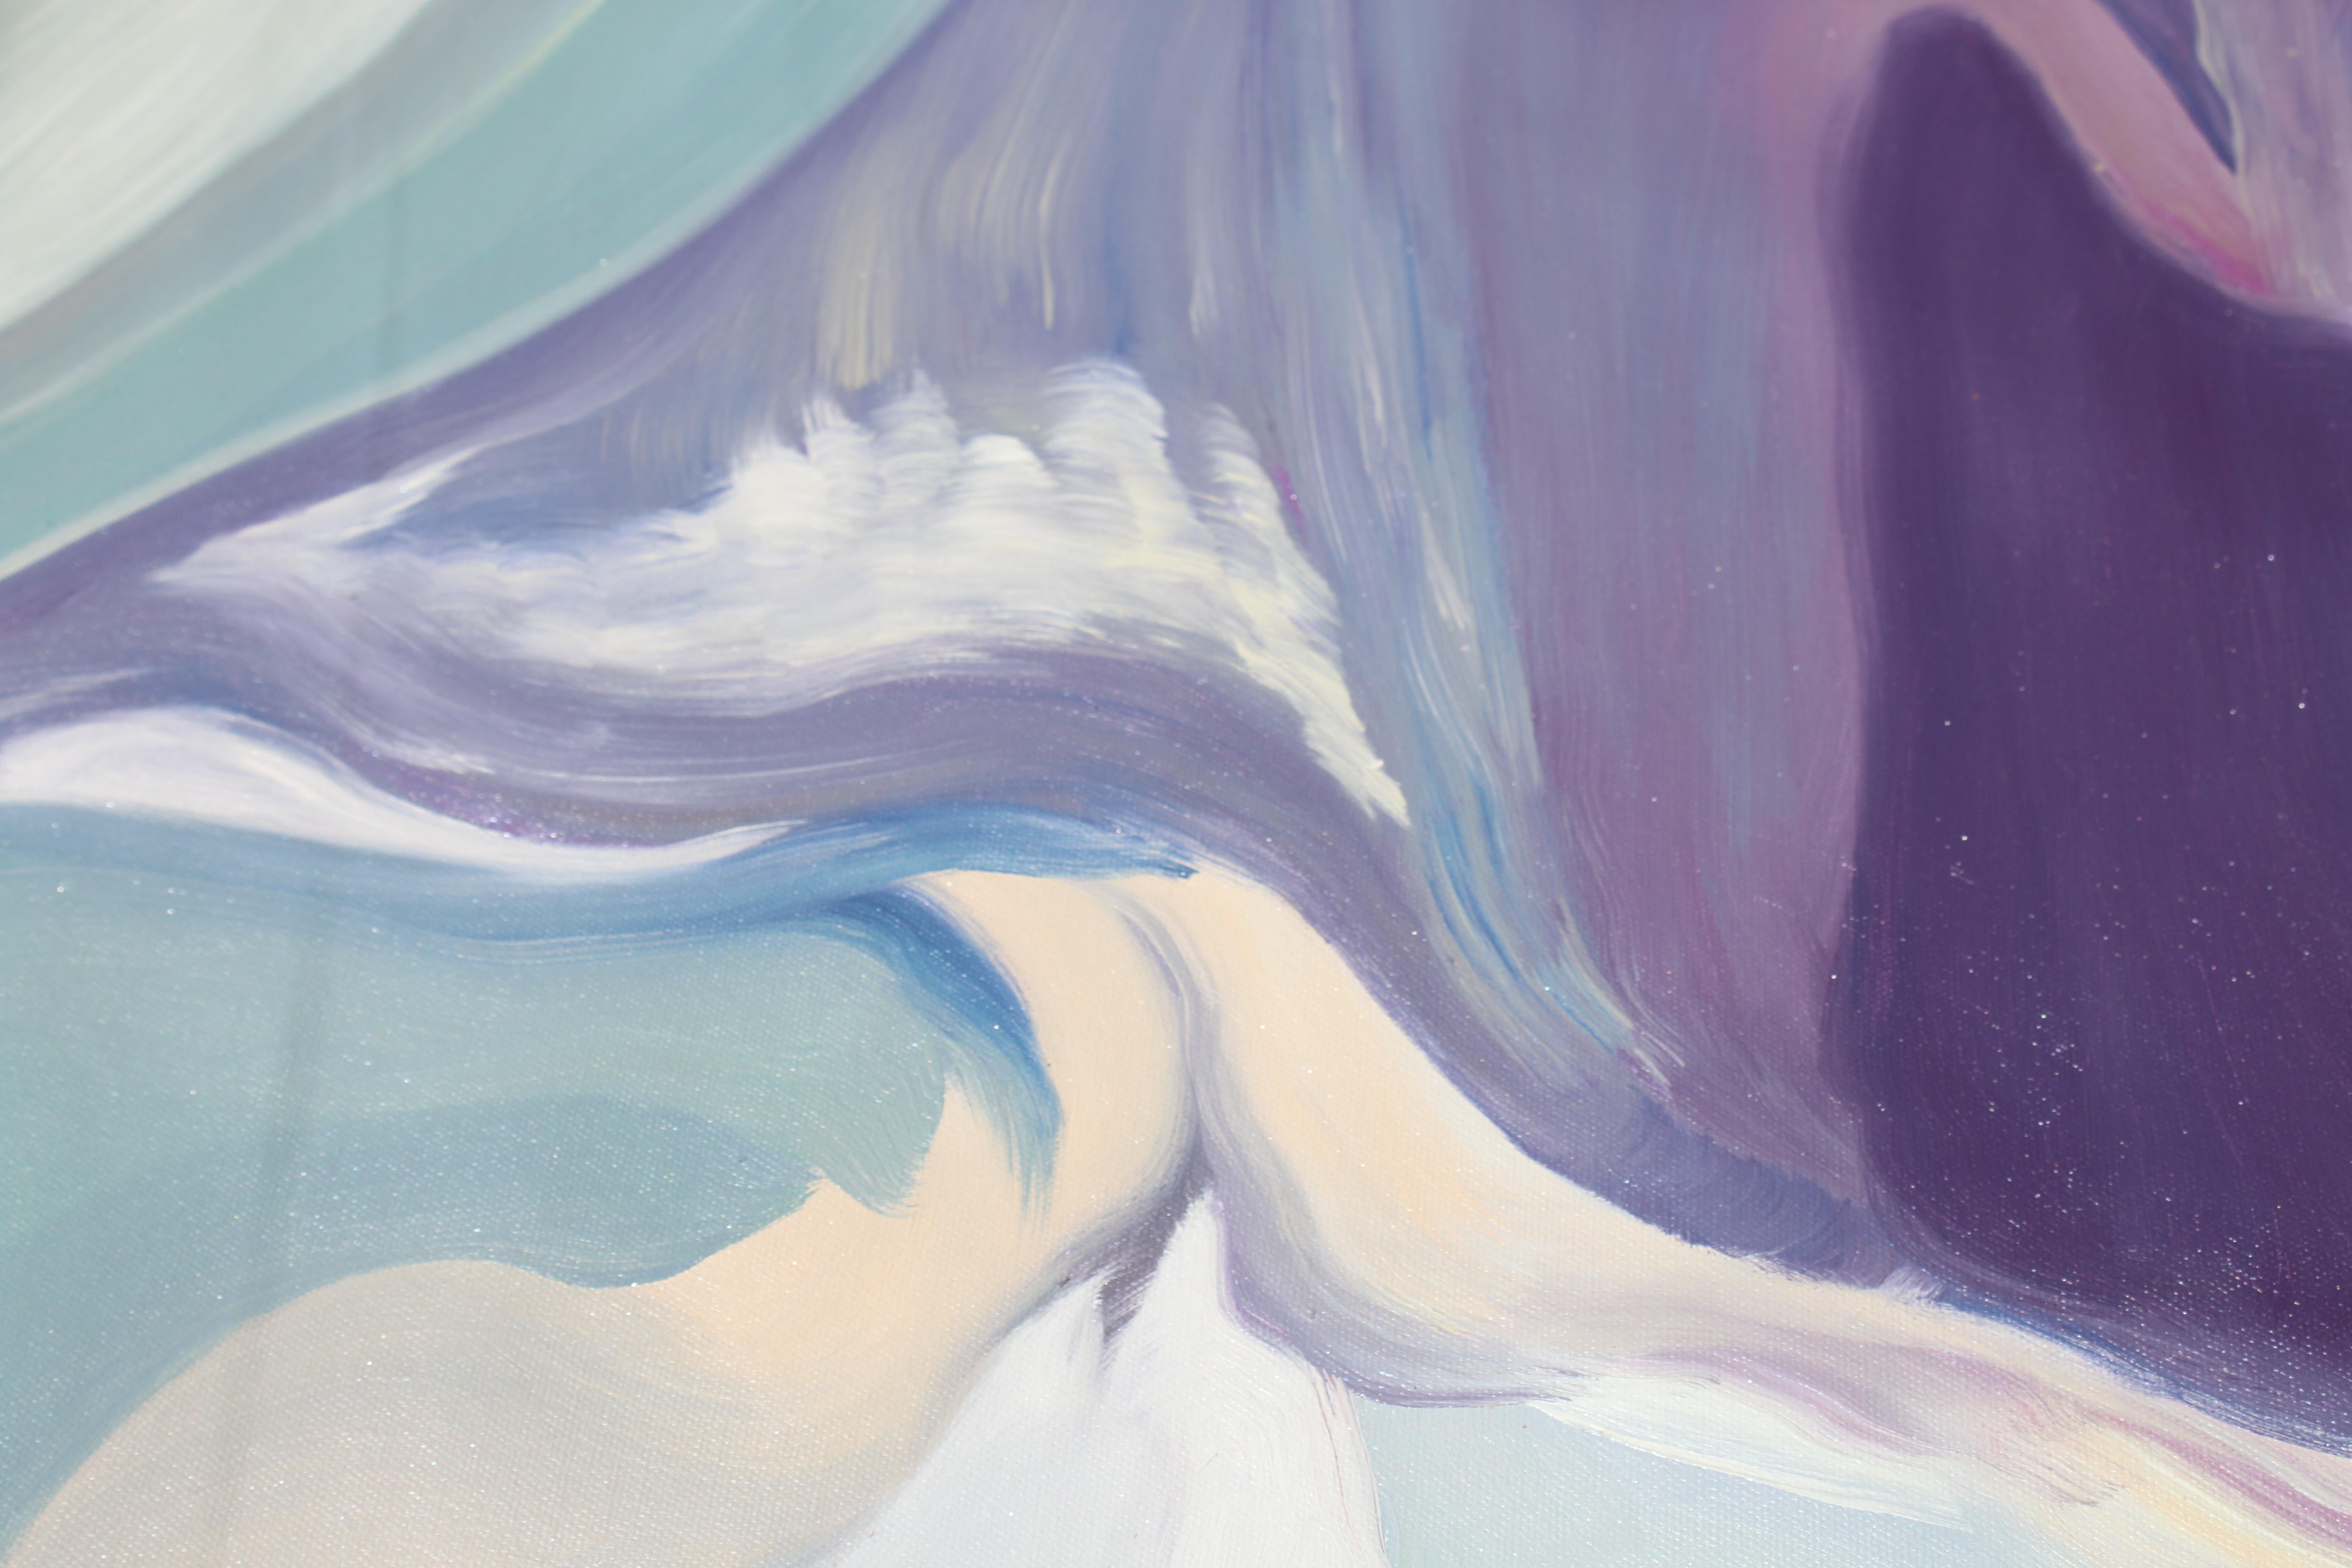 Zeitgenössisches abstraktes Ölgemälde auf Leinwand in Violett und Blau, 38 x 38 Zoll, Gemälde mit gemischten Gefühlen (Abstrakter Expressionismus), Painting, von Irena Orlov